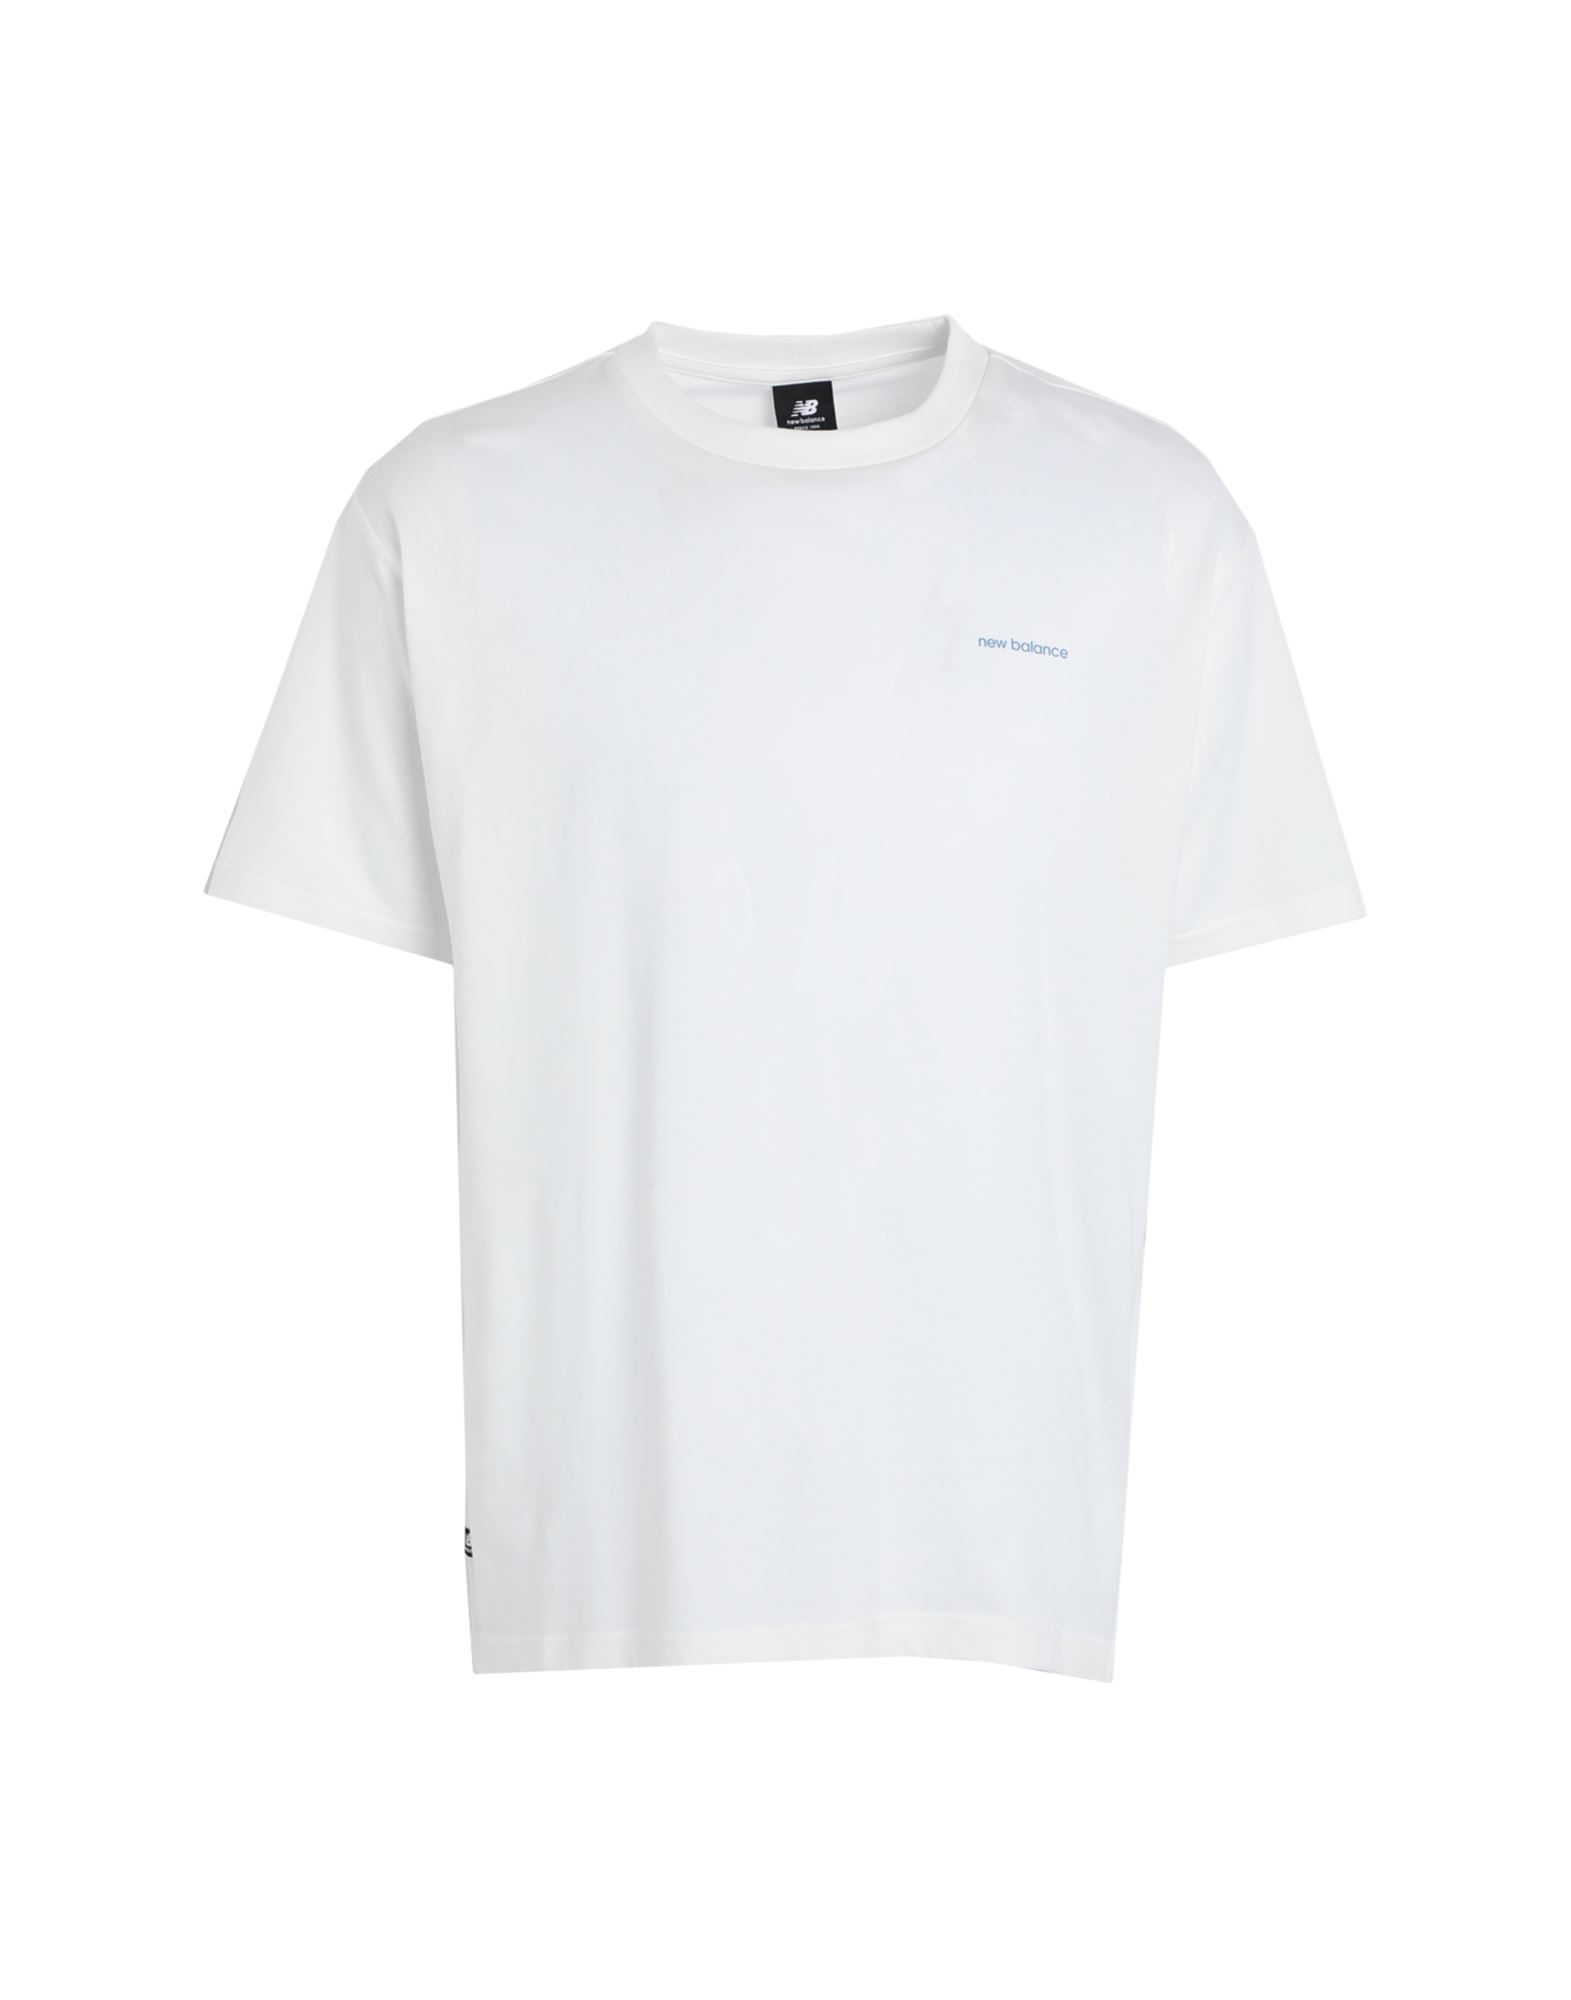 NEW BALANCE T-shirts Herren Weiß von NEW BALANCE